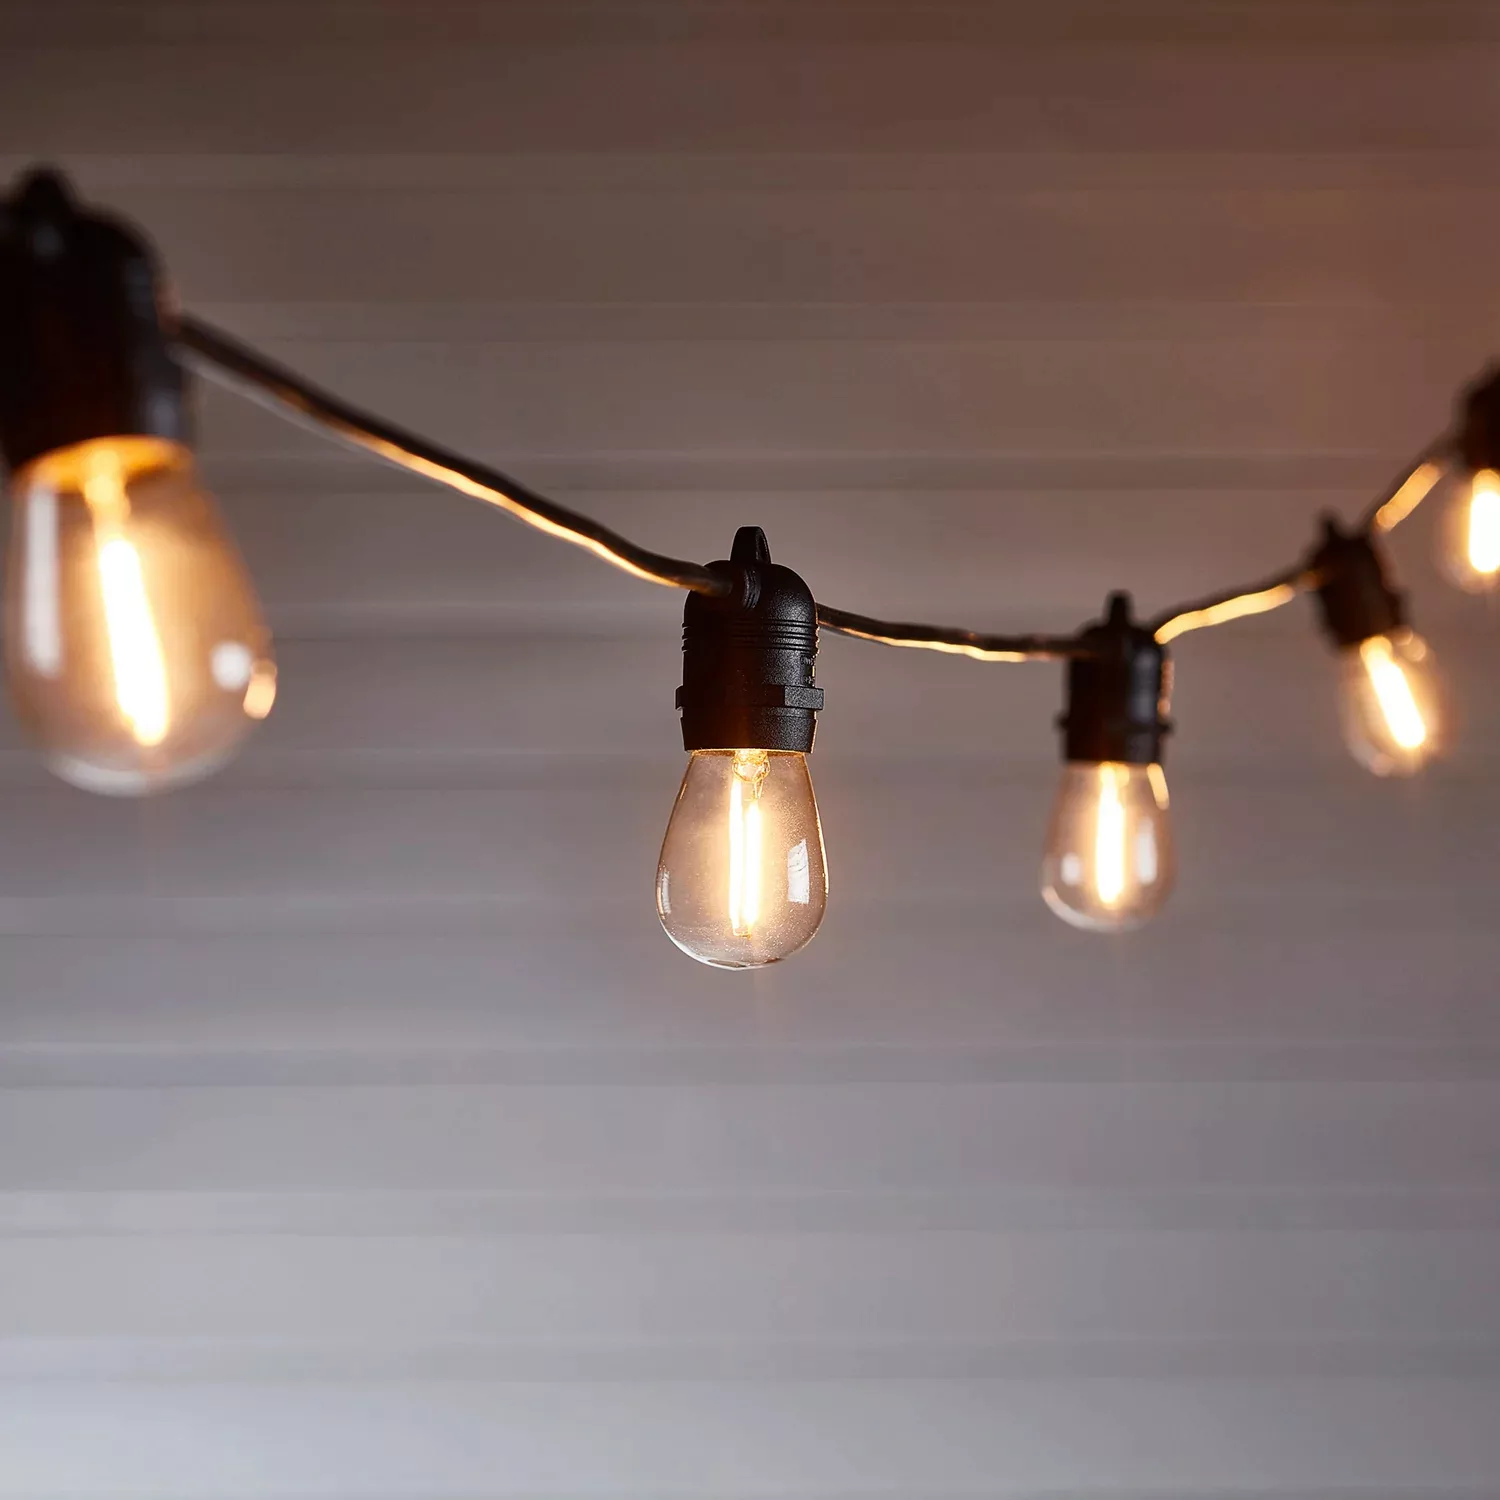 Ultimate Connect 5m 10er LED Lichterkette Glühbirnen warmweiß koppelbar sch günstig online kaufen